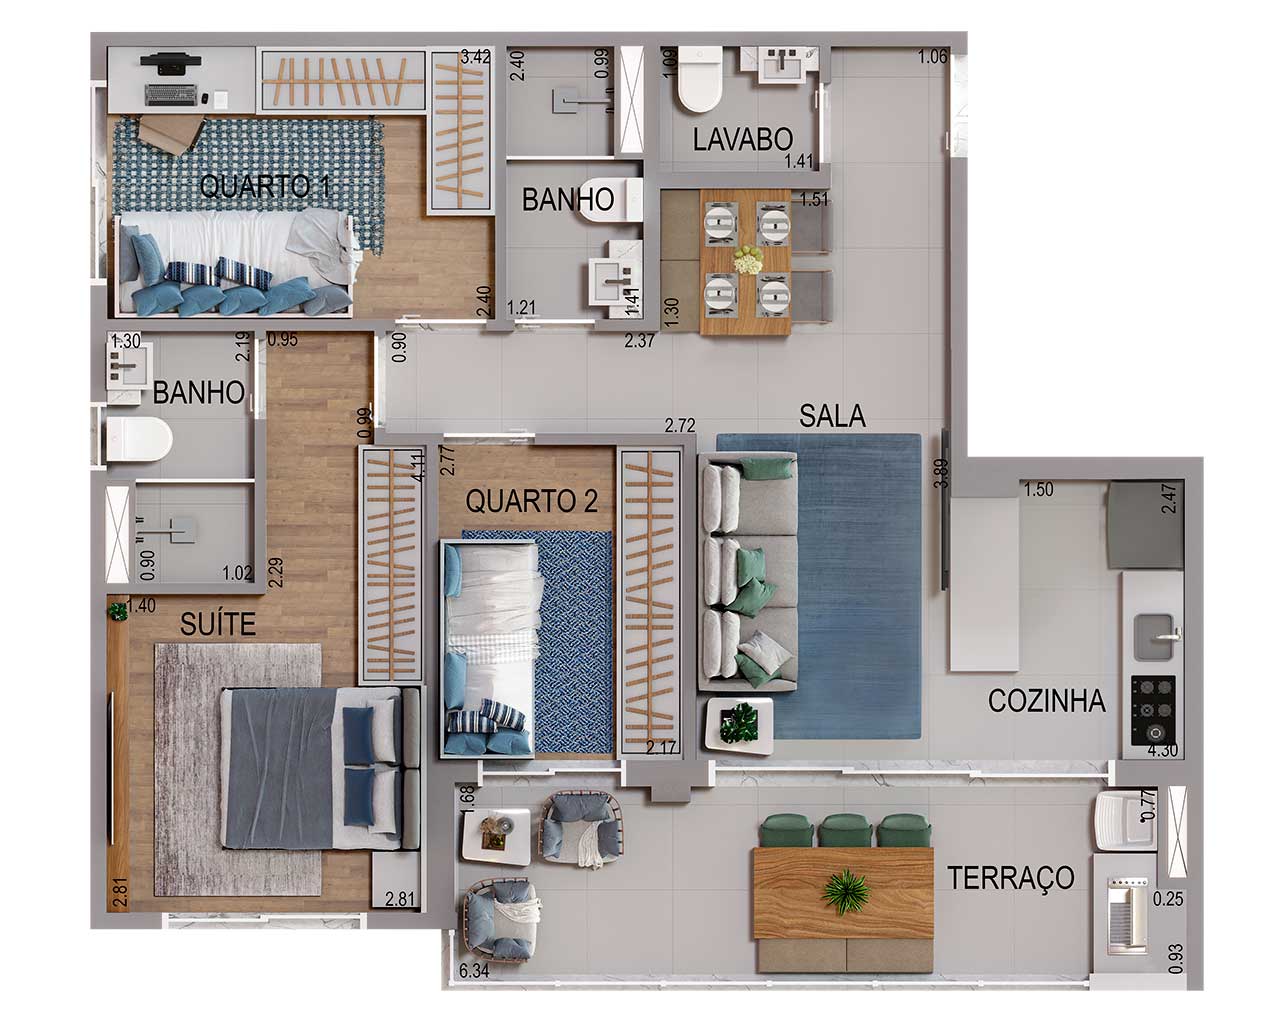 Planta 73m² - 3 Dormitórios, 1 suíte e 2 vagas de garagem  - Acqua Park Barueri